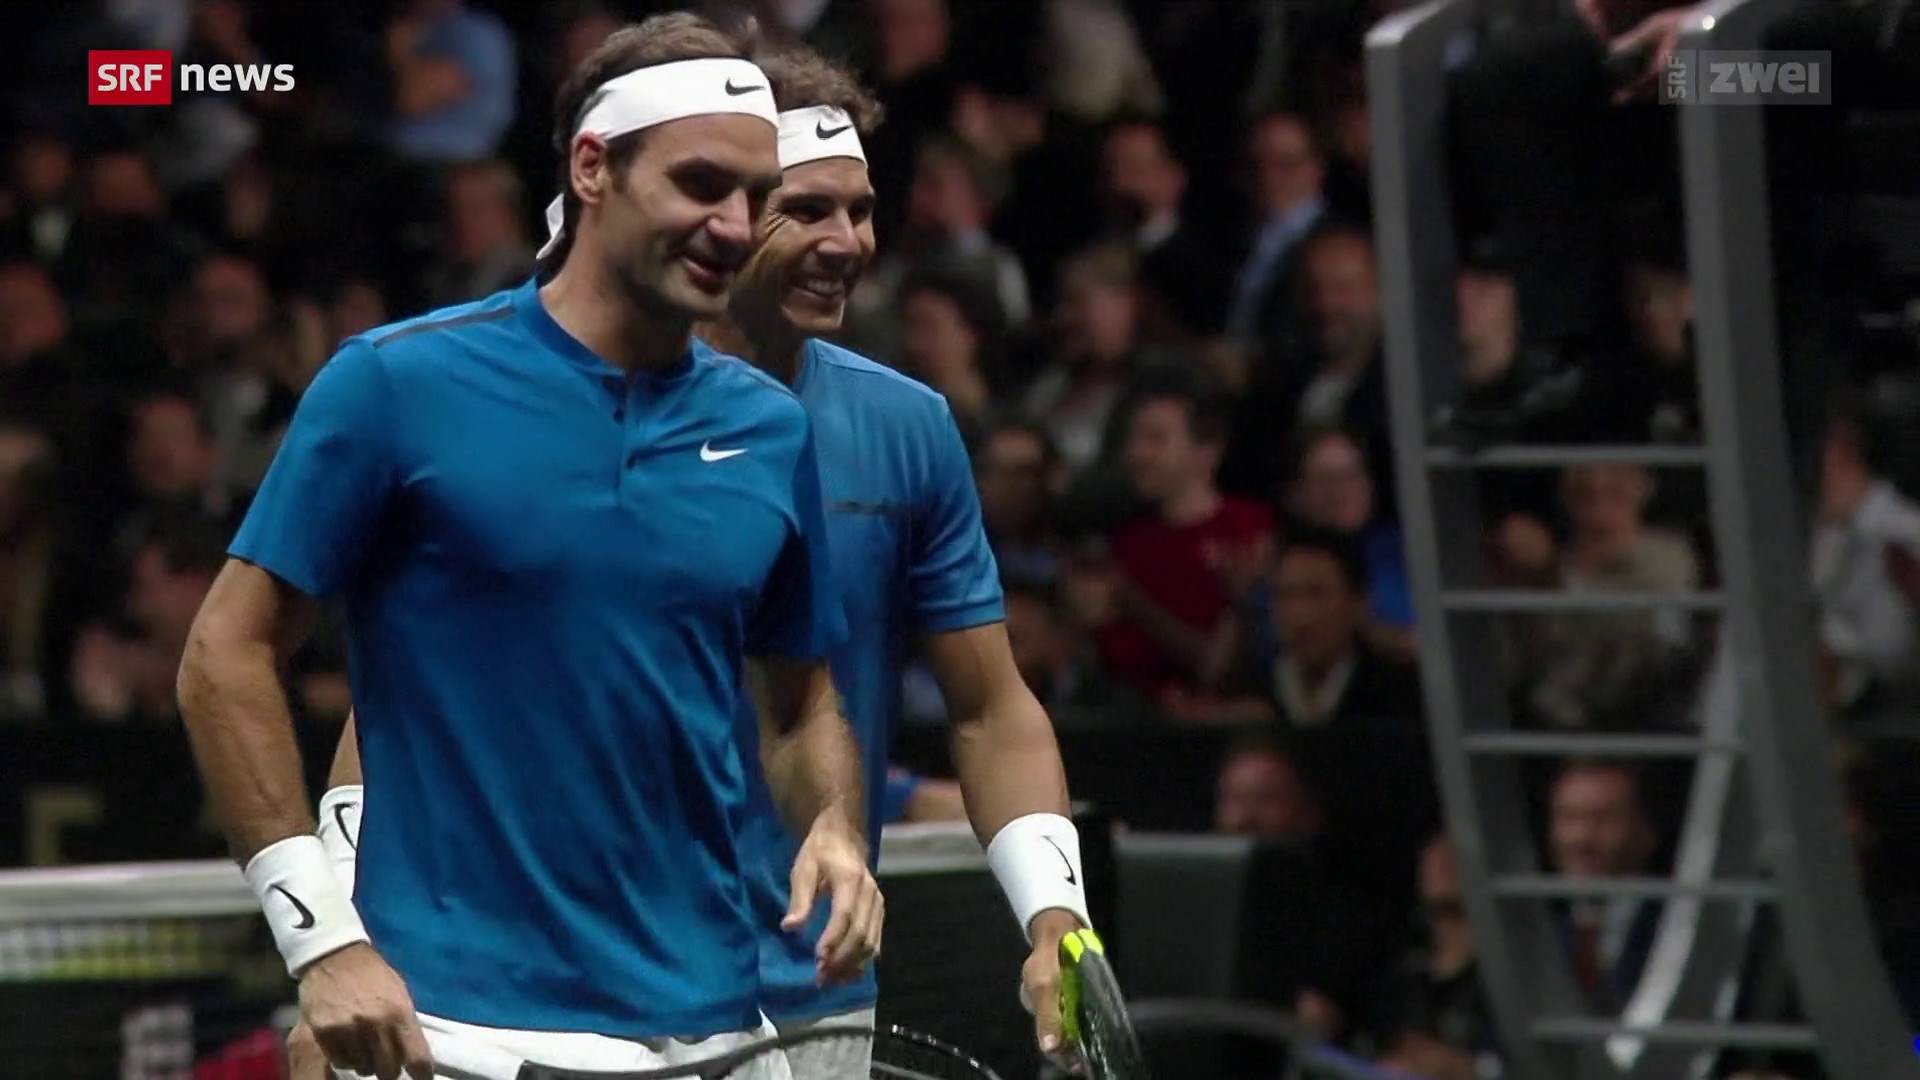 Am Freitag am Laver Cup - Bestätigt Federers letztes Spiel ist ein Doppel mit Nadal - Sport